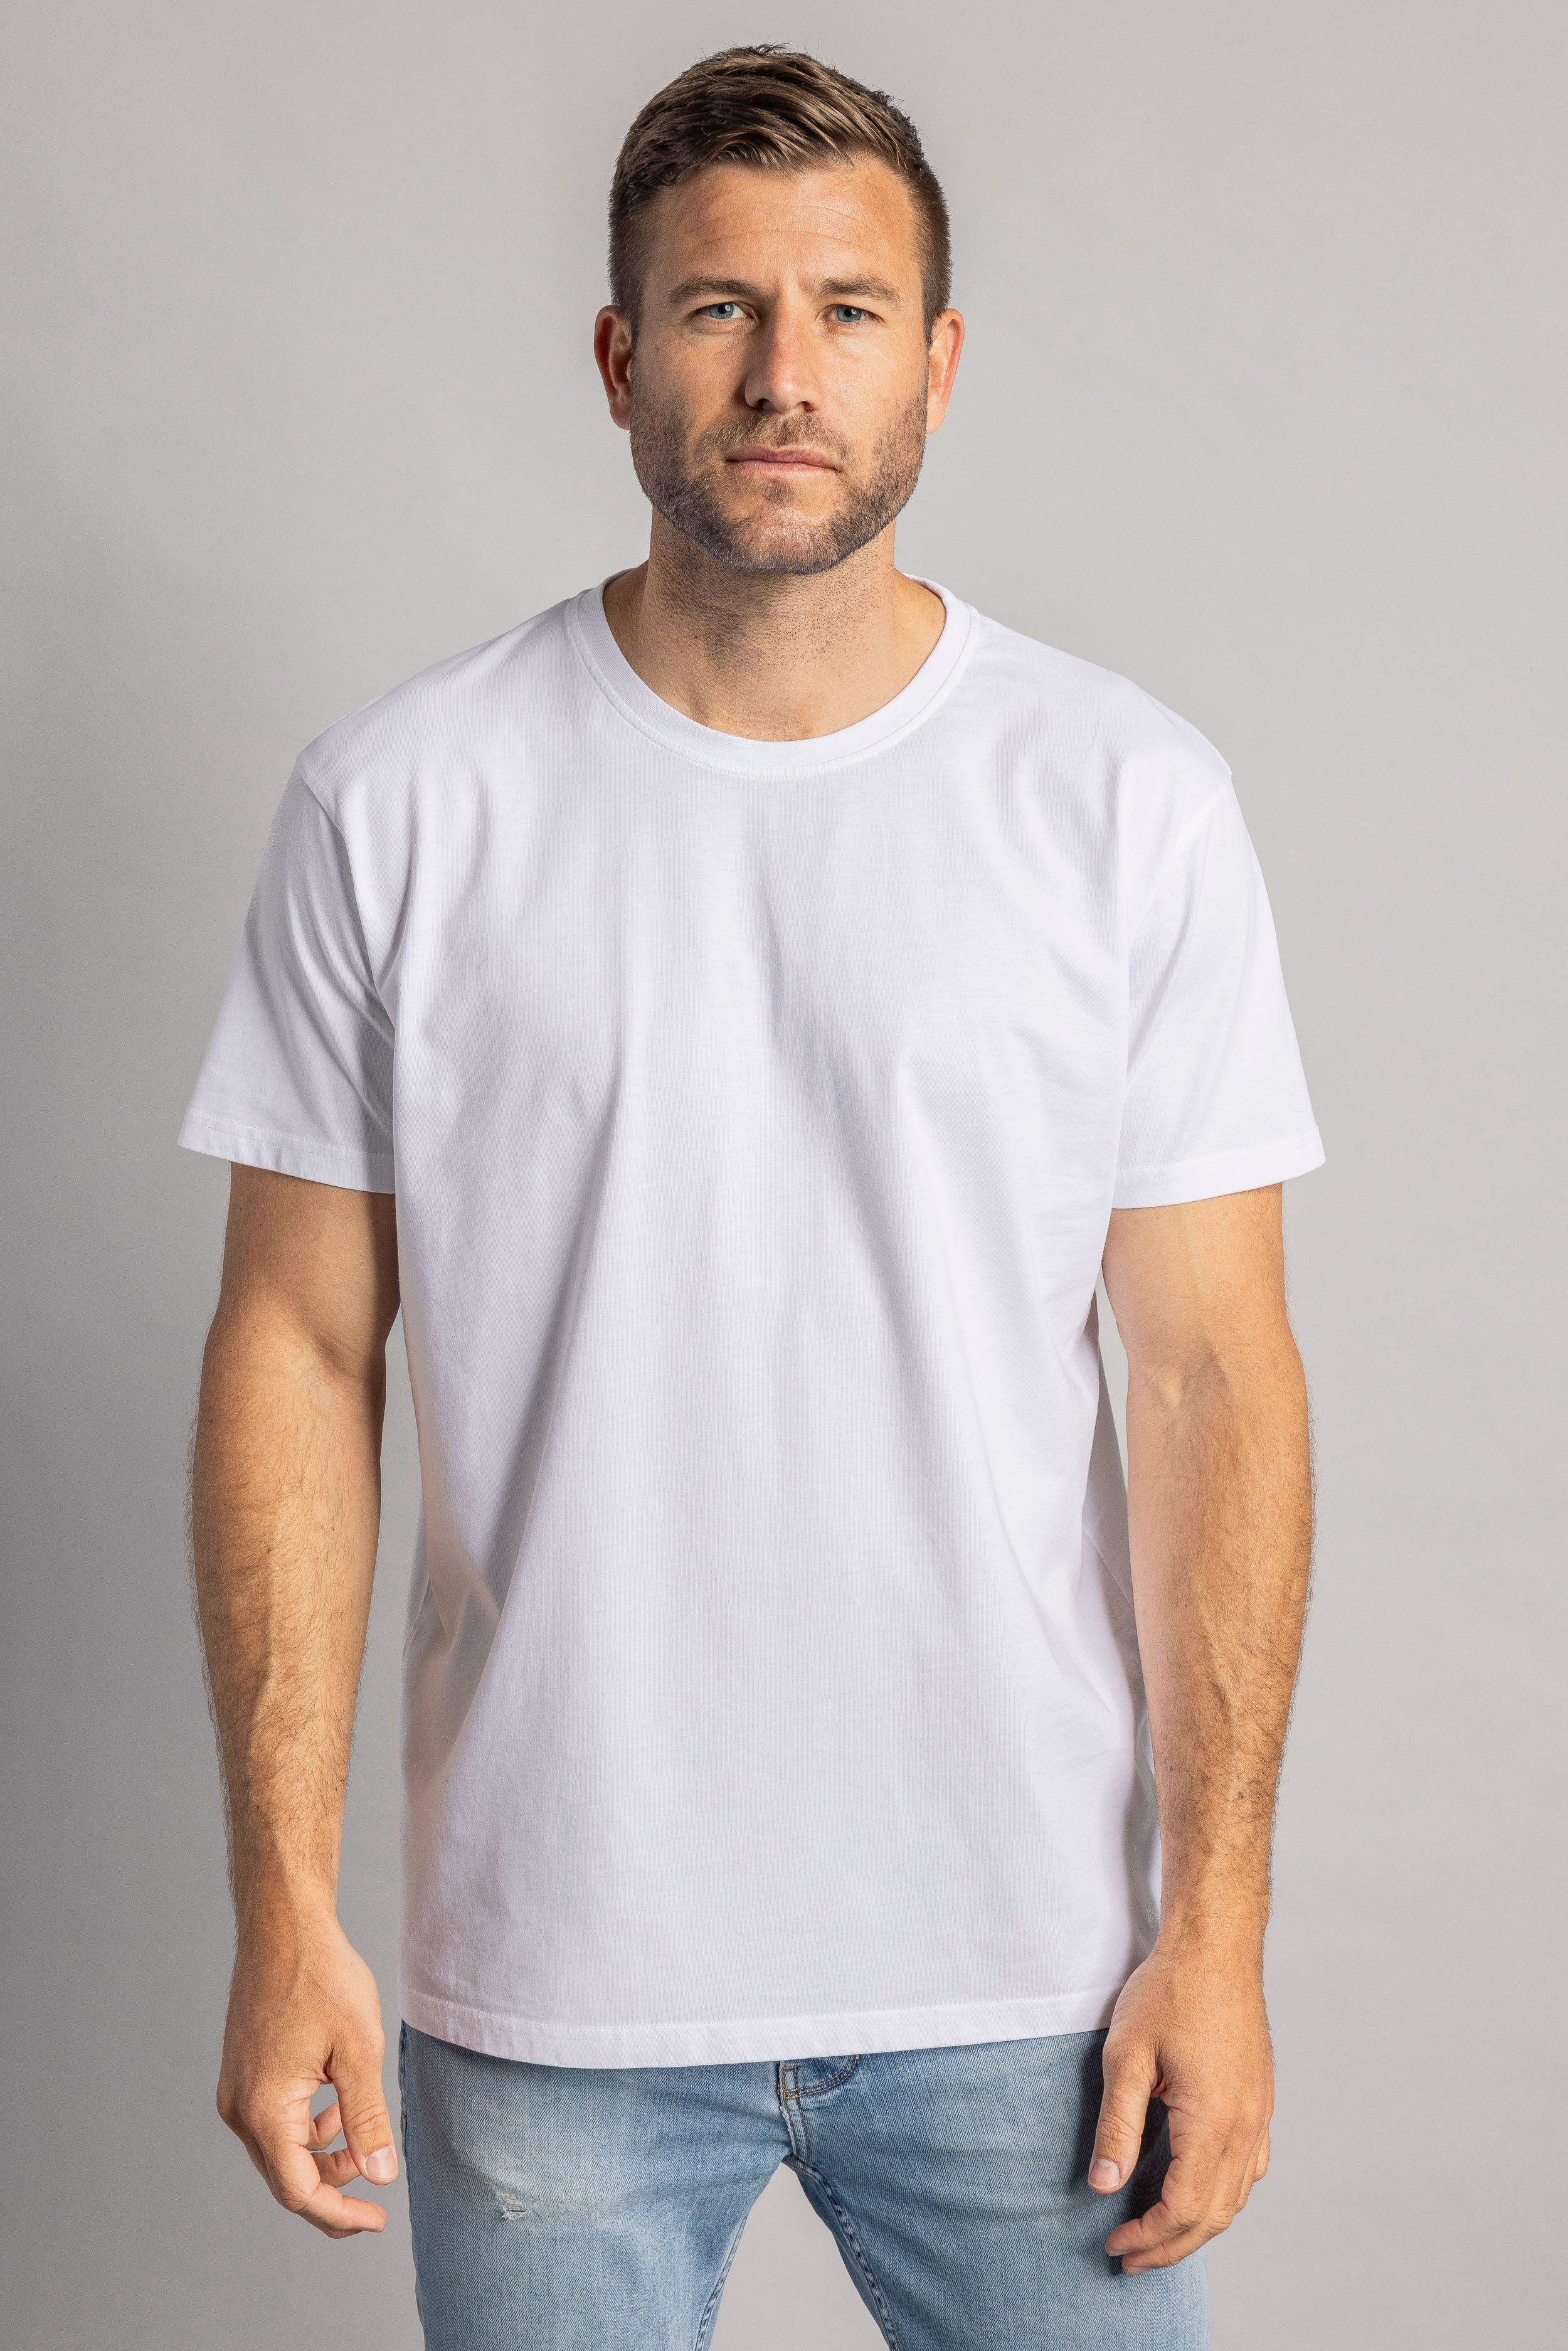 Weisses T-Shirt Premium Blank Standard aus 100% Bio-Baumwolle von DIRTS